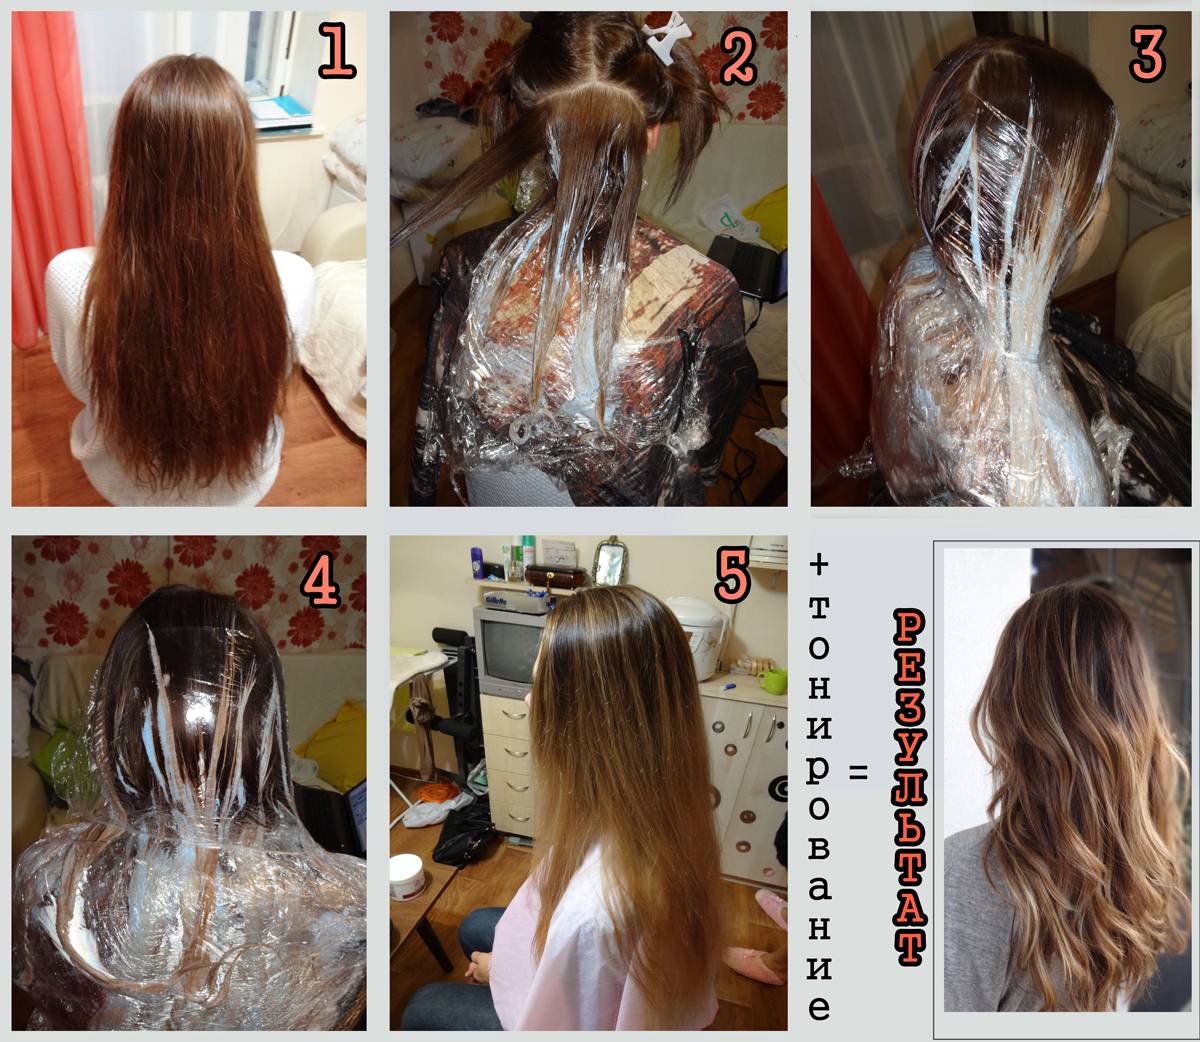 Крупное мелирование на русые волосы: всё о технике широких прядей, фото до и после, подробная инструкция по окрашиванию, а также противопоказания